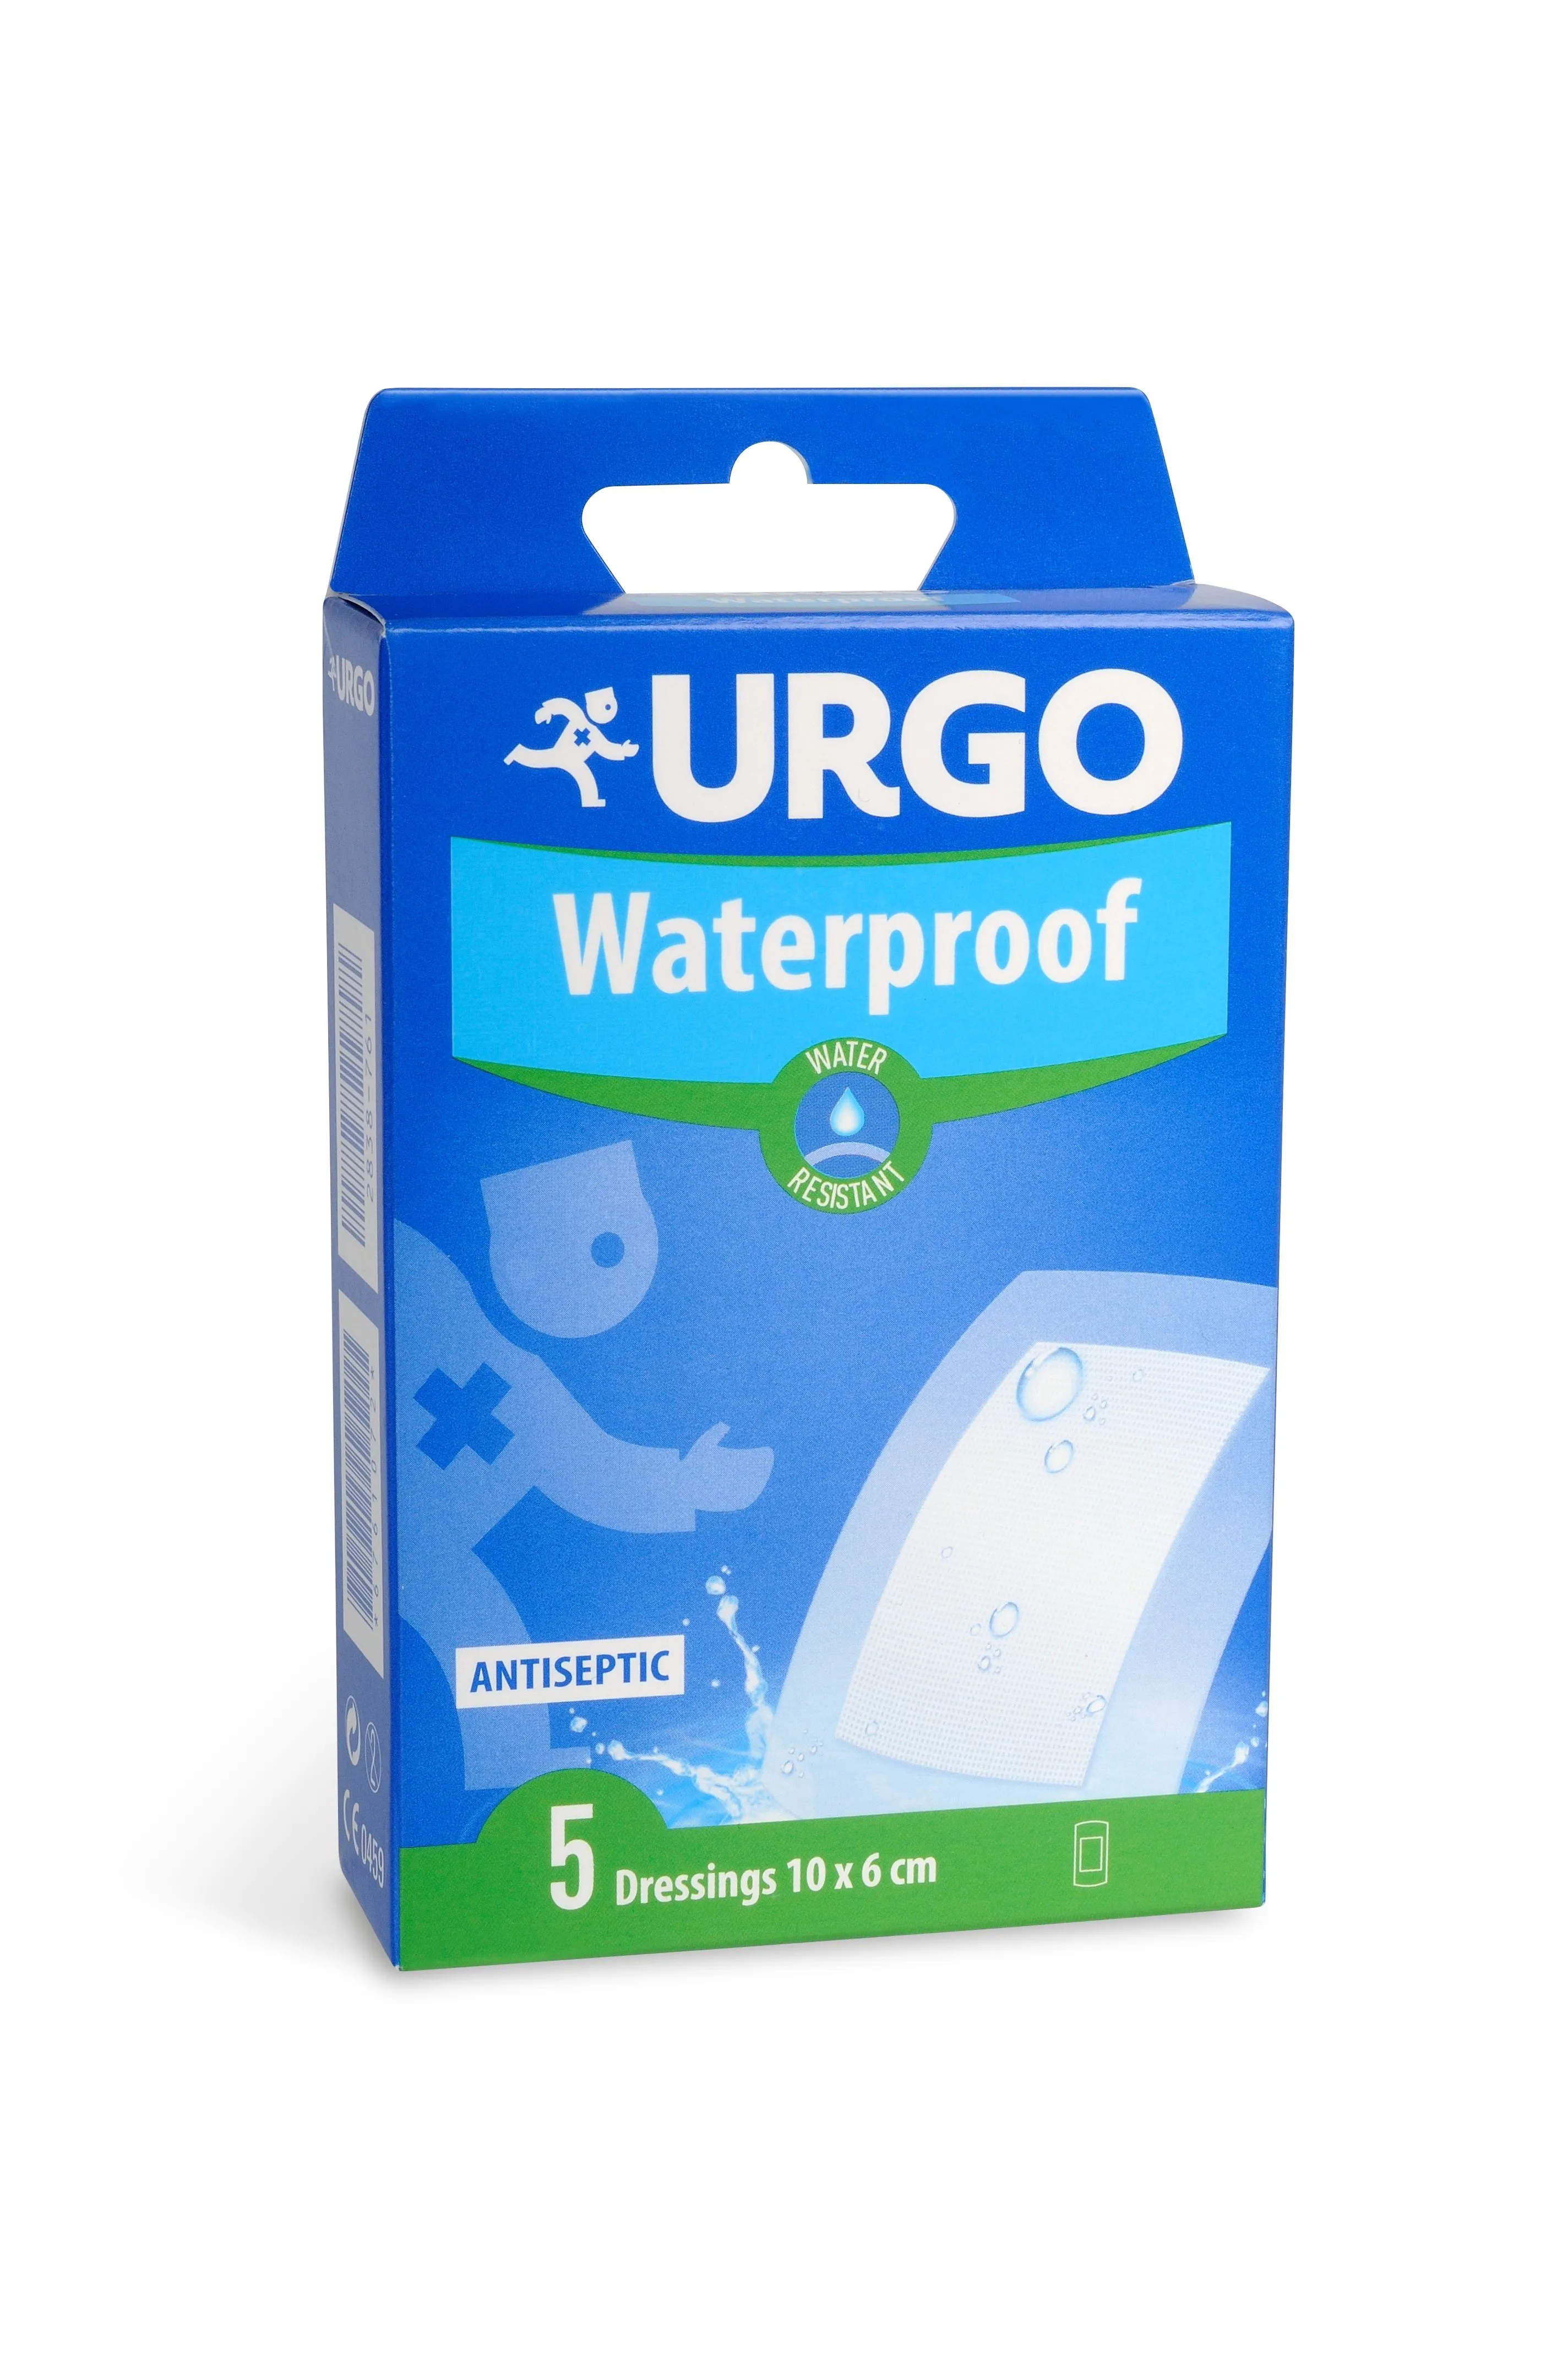 Urgo Waterproof 10 x 6 cm